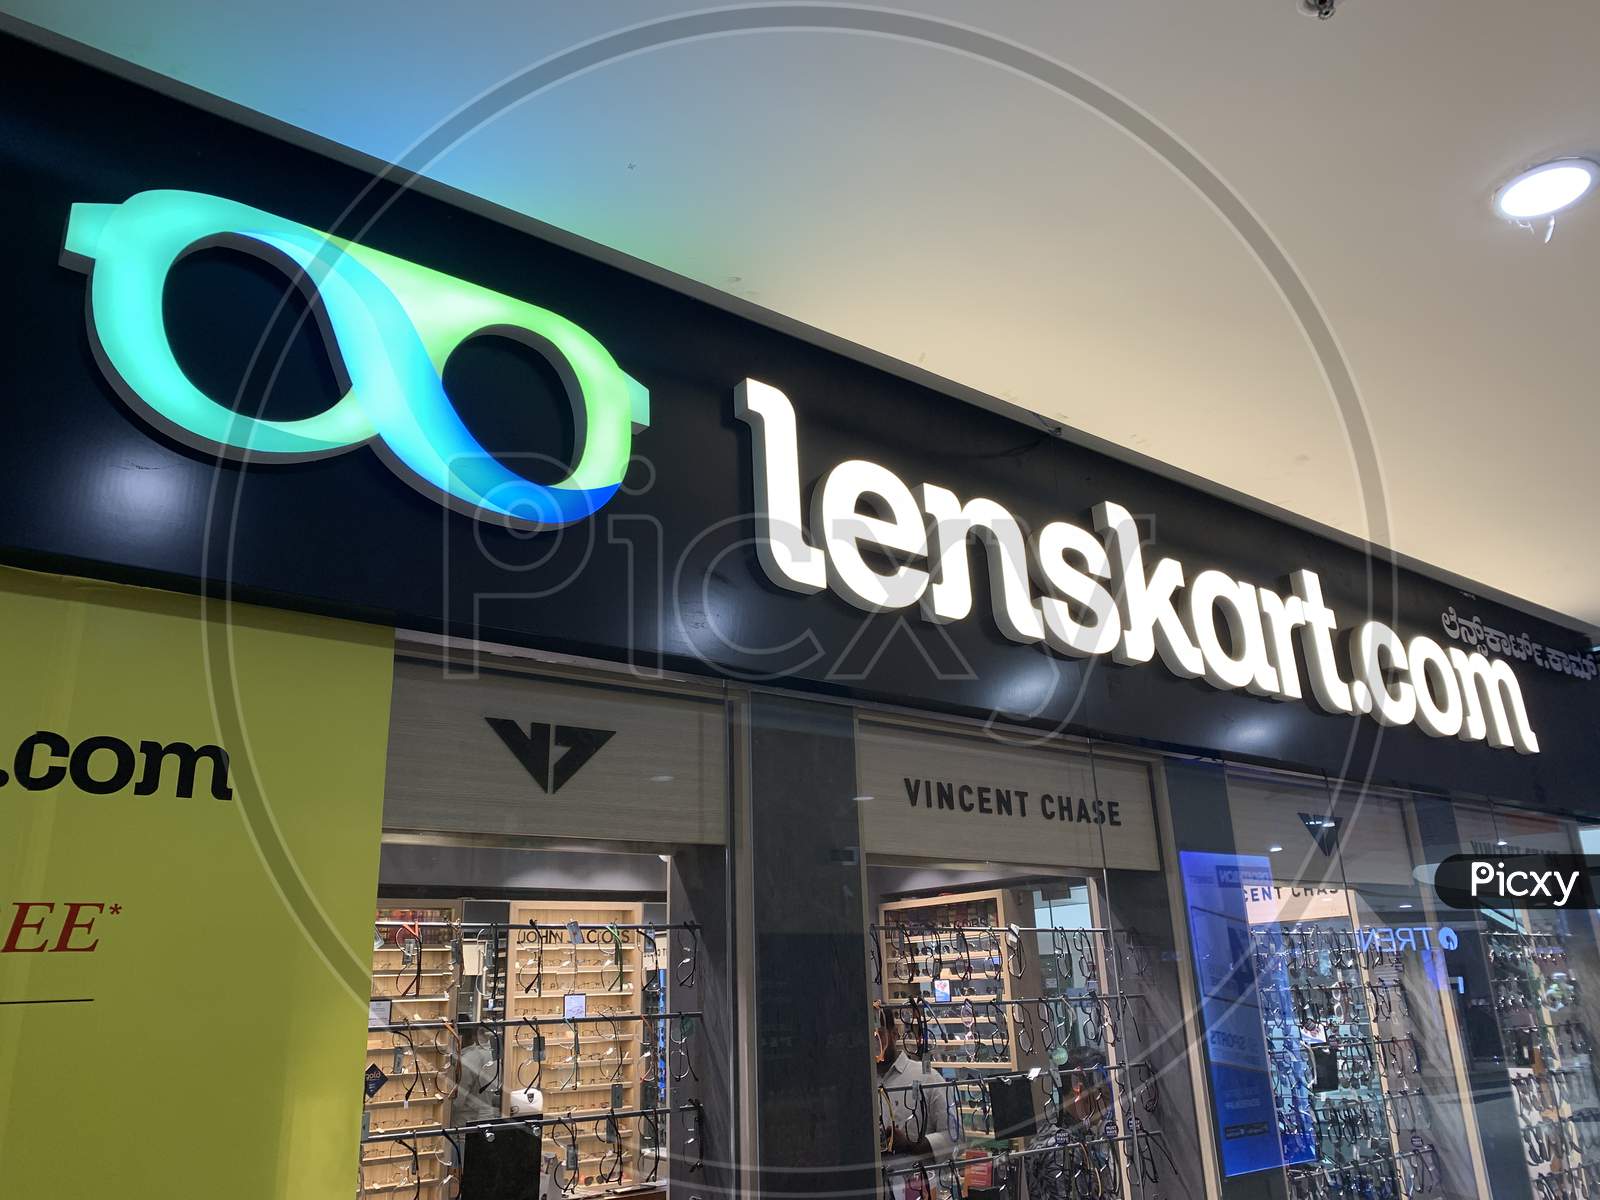 Lenskart logo